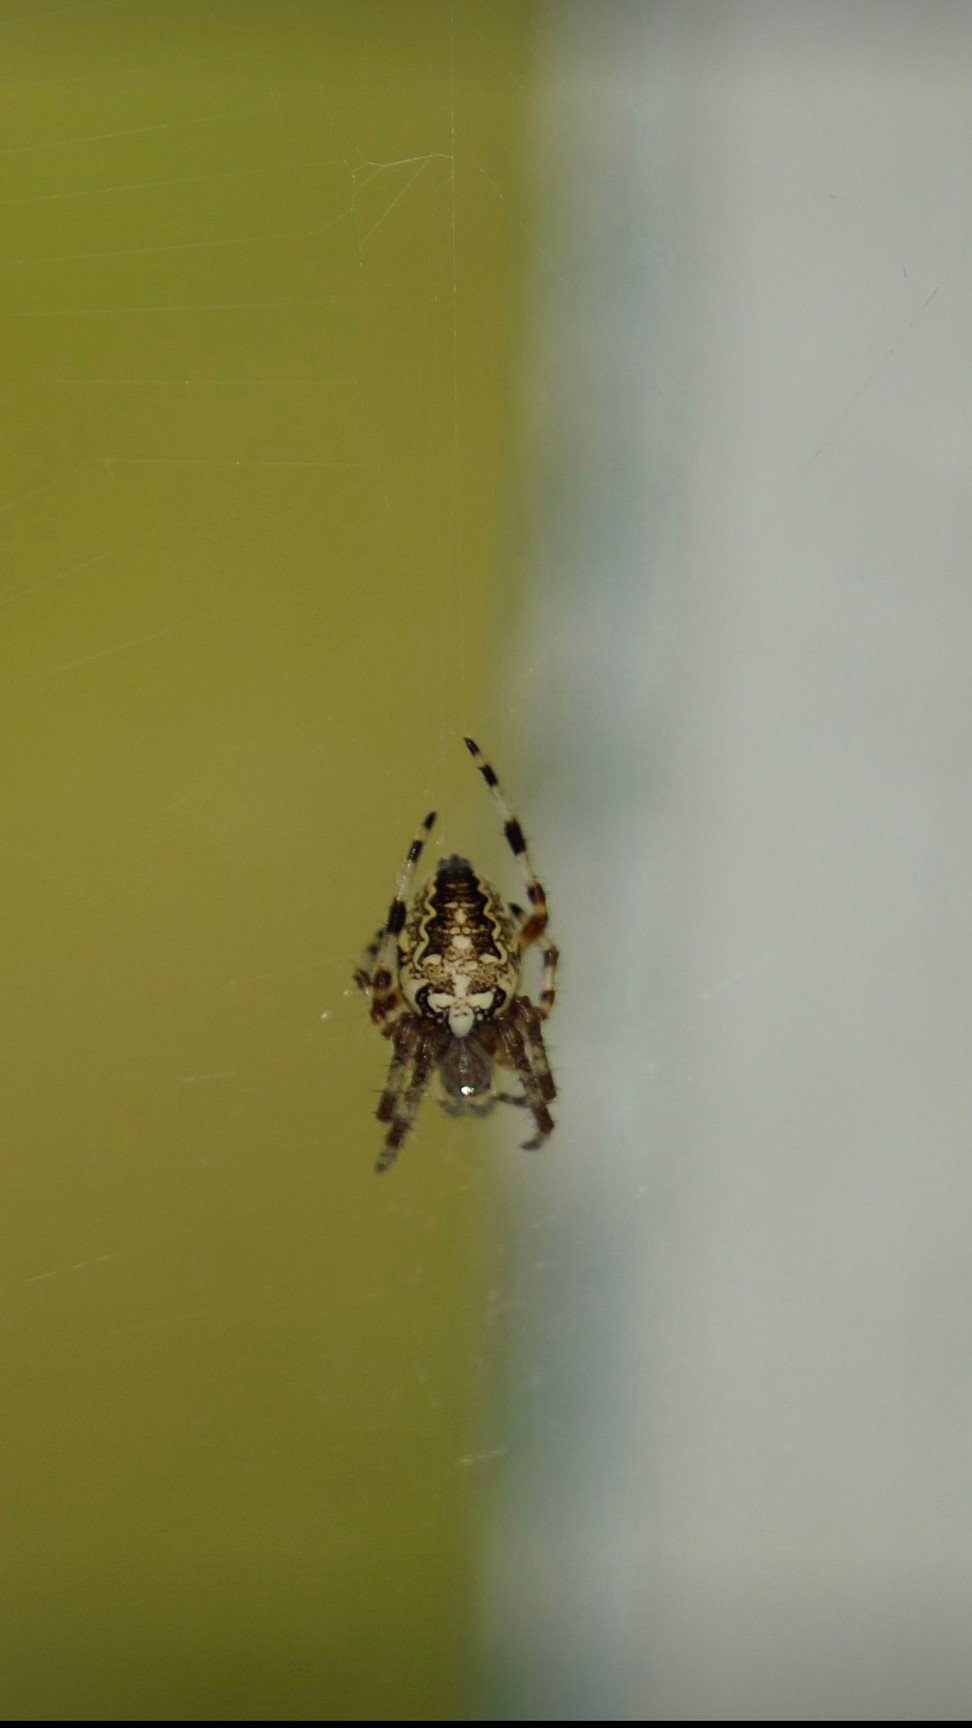 
Ученый Елена Панюкова о крестовиках: «Если будете мучить бедного паука, он будет защищаться»